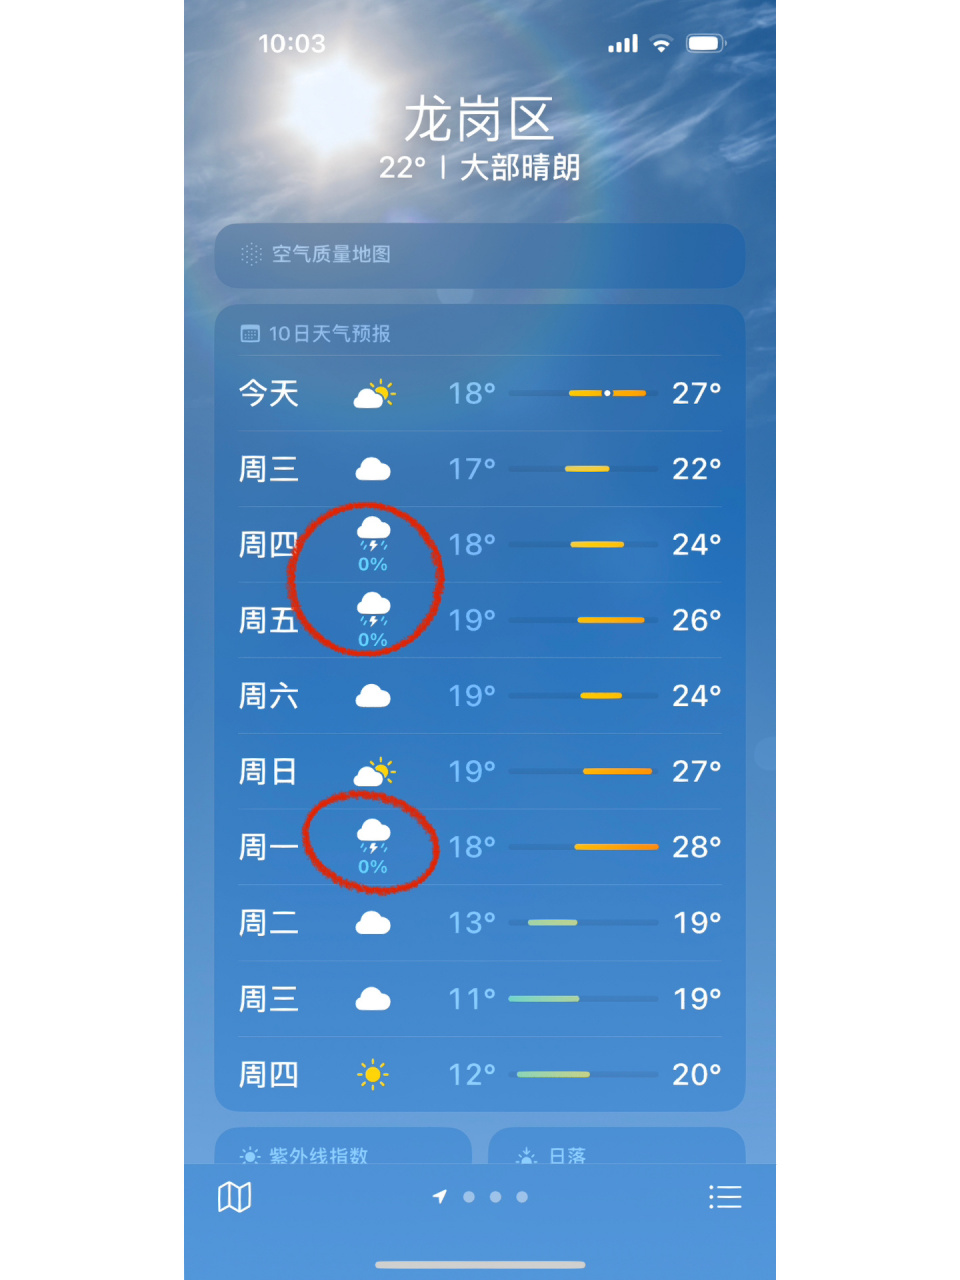 深圳天气预报 所以说0%的降雨量到底是嘛意思呢?